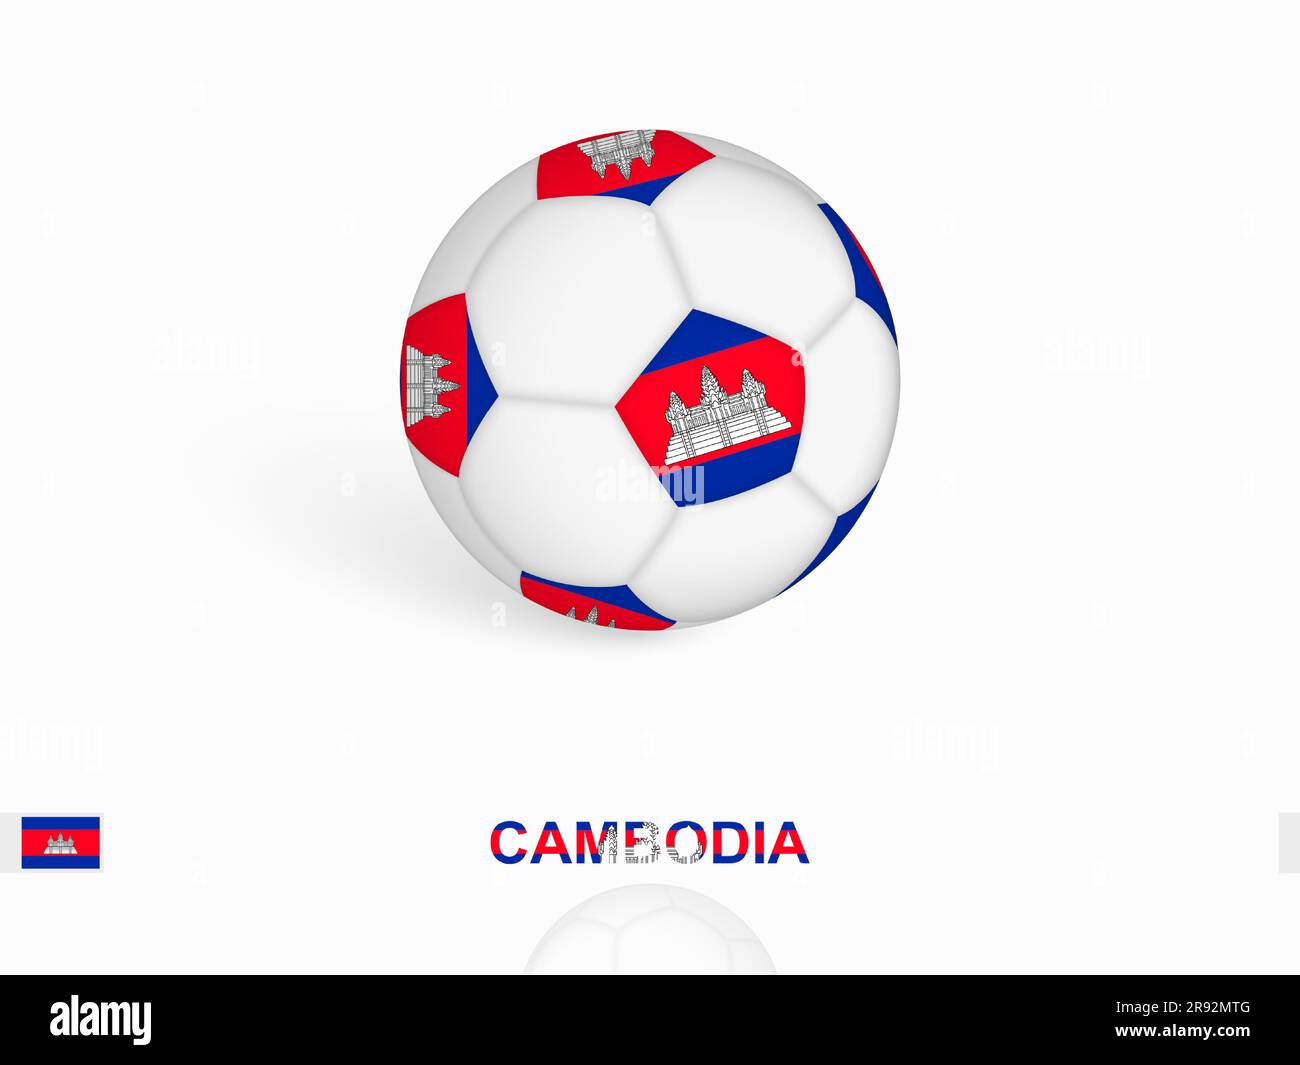 Fußball mit der kambodschanischen Flagge, Fußballsportausrüstung. Vektordarstellung. Stock Vektor